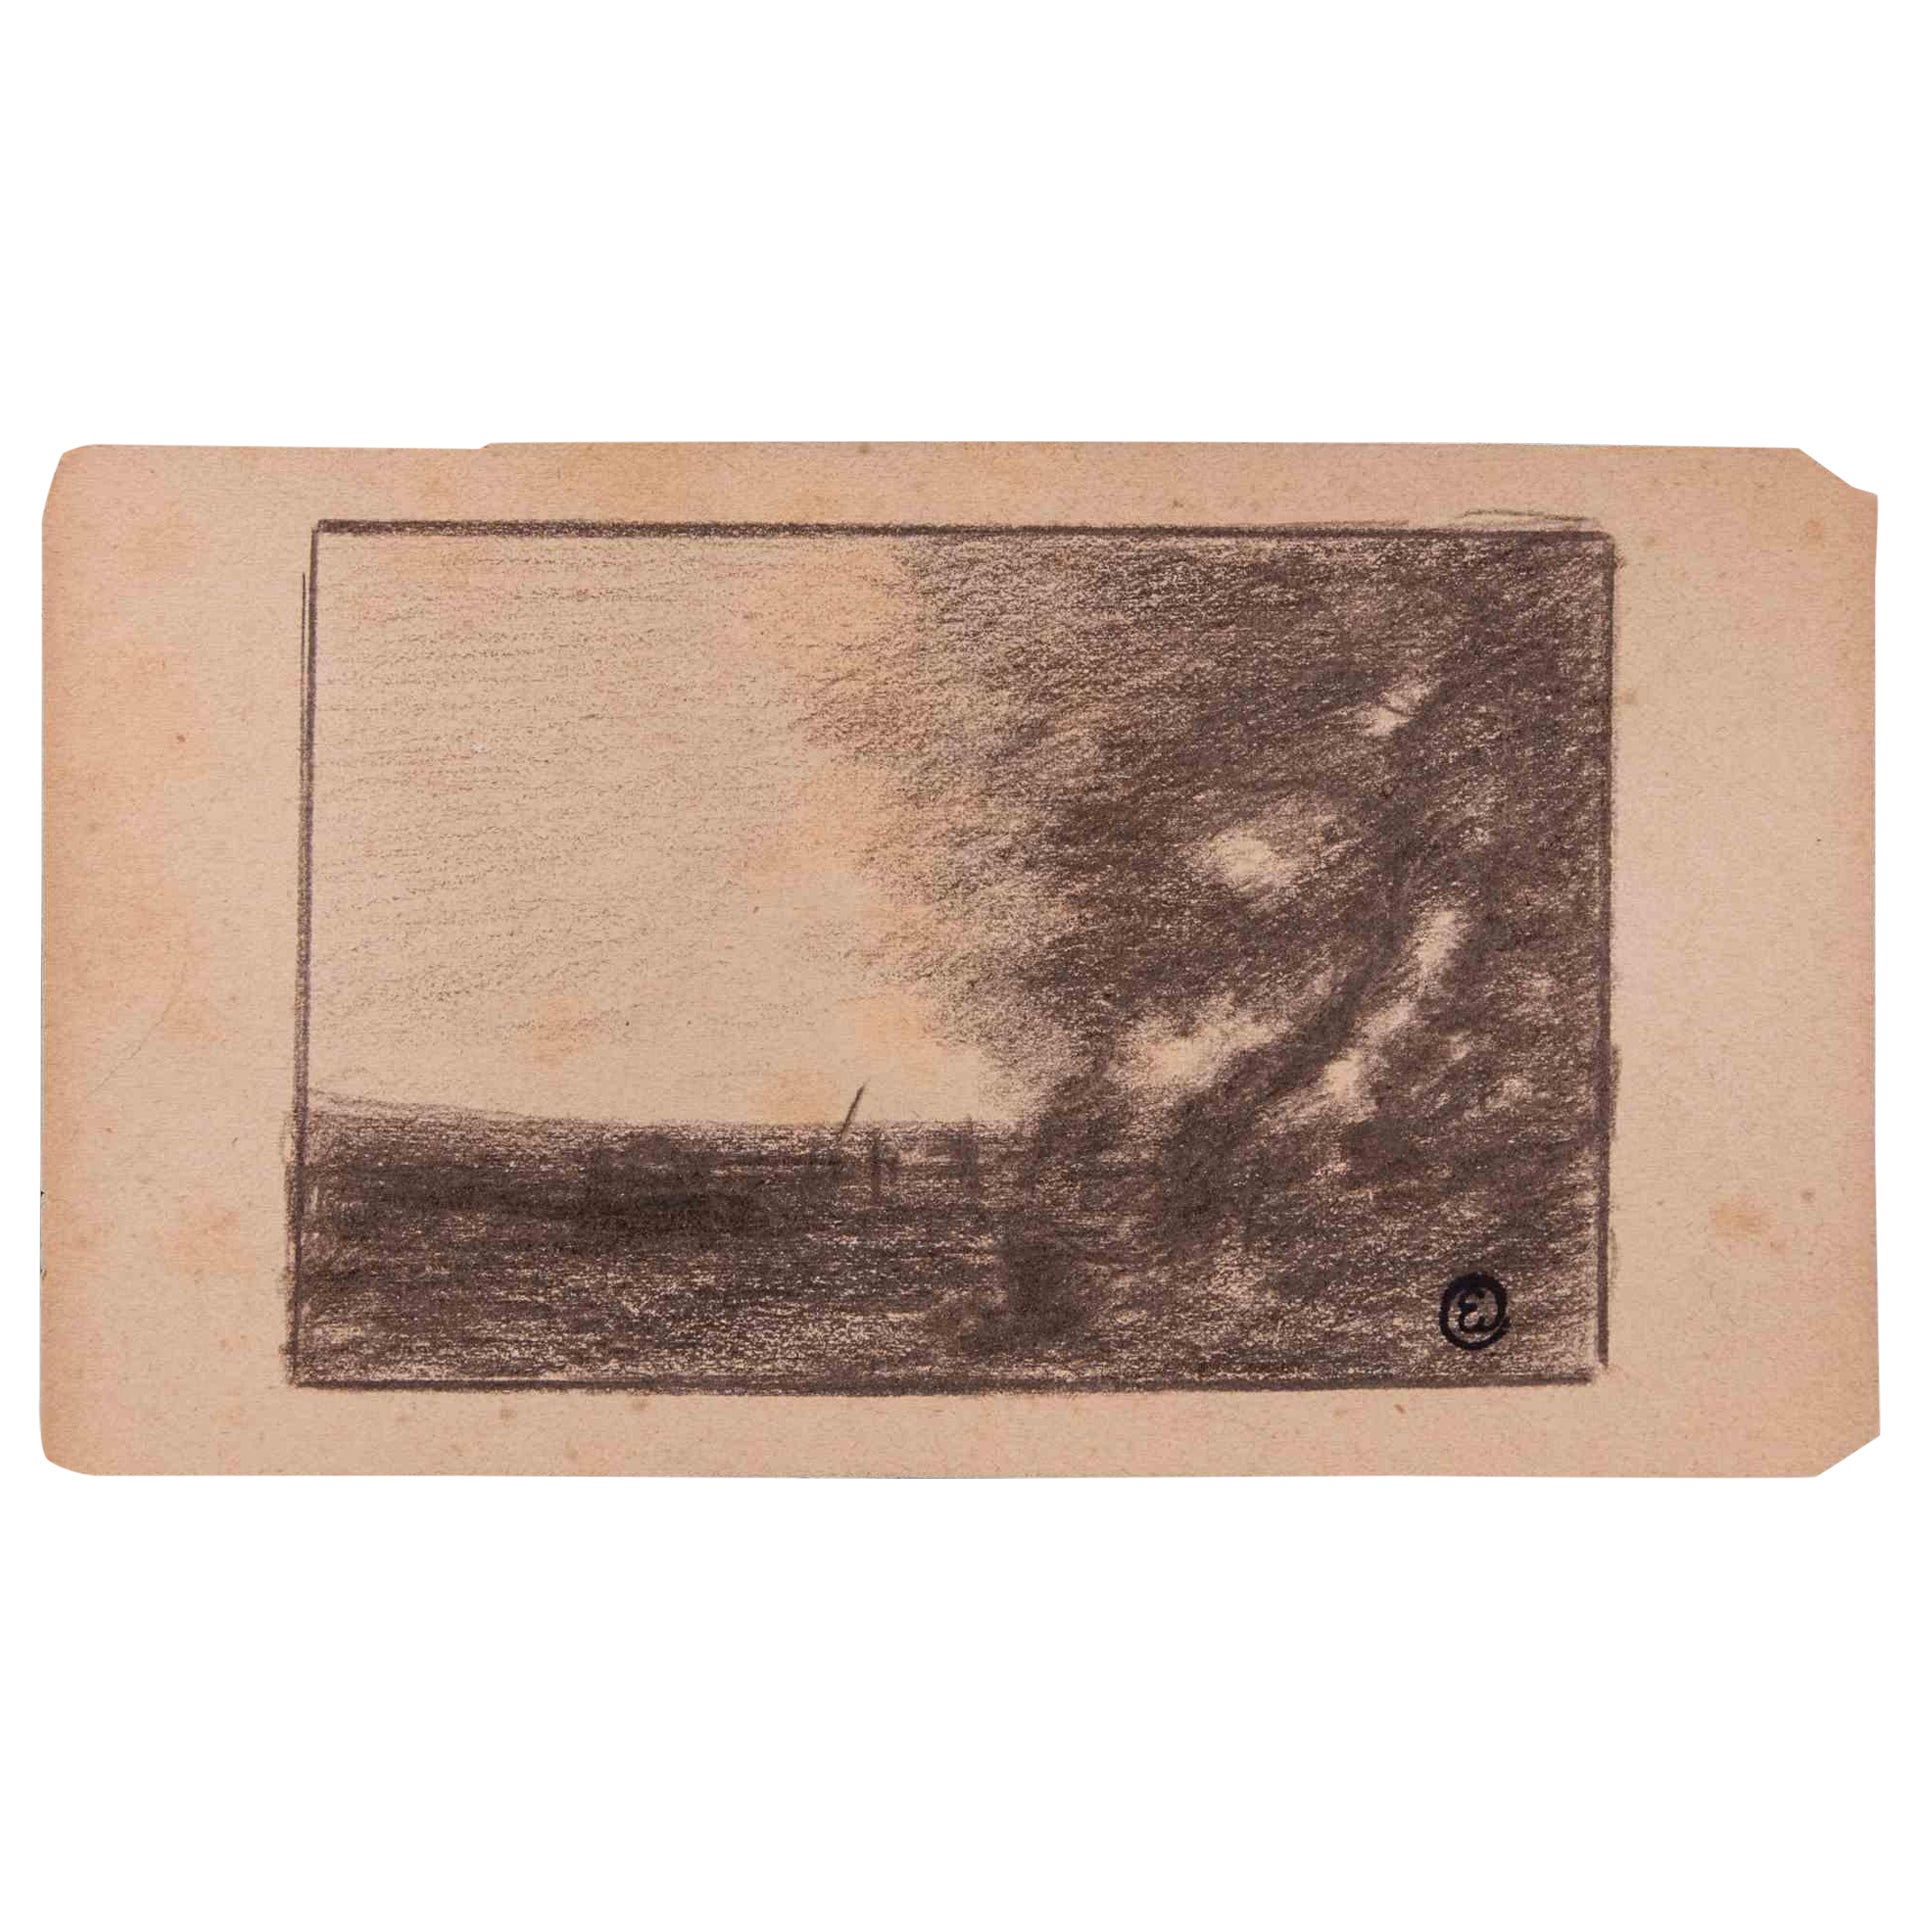 Landschaft ist eine Originalzeichnung in Kohle, die Anfang des 20. Jahrhunderts von Edmond Cuisinier (1857-1917) angefertigt wurde.

Monogrammiert auf der Unterseite. Mit dem Stempel auf der Rückseite.

Gute Bedingungen.

Das Kunstwerk wird mit